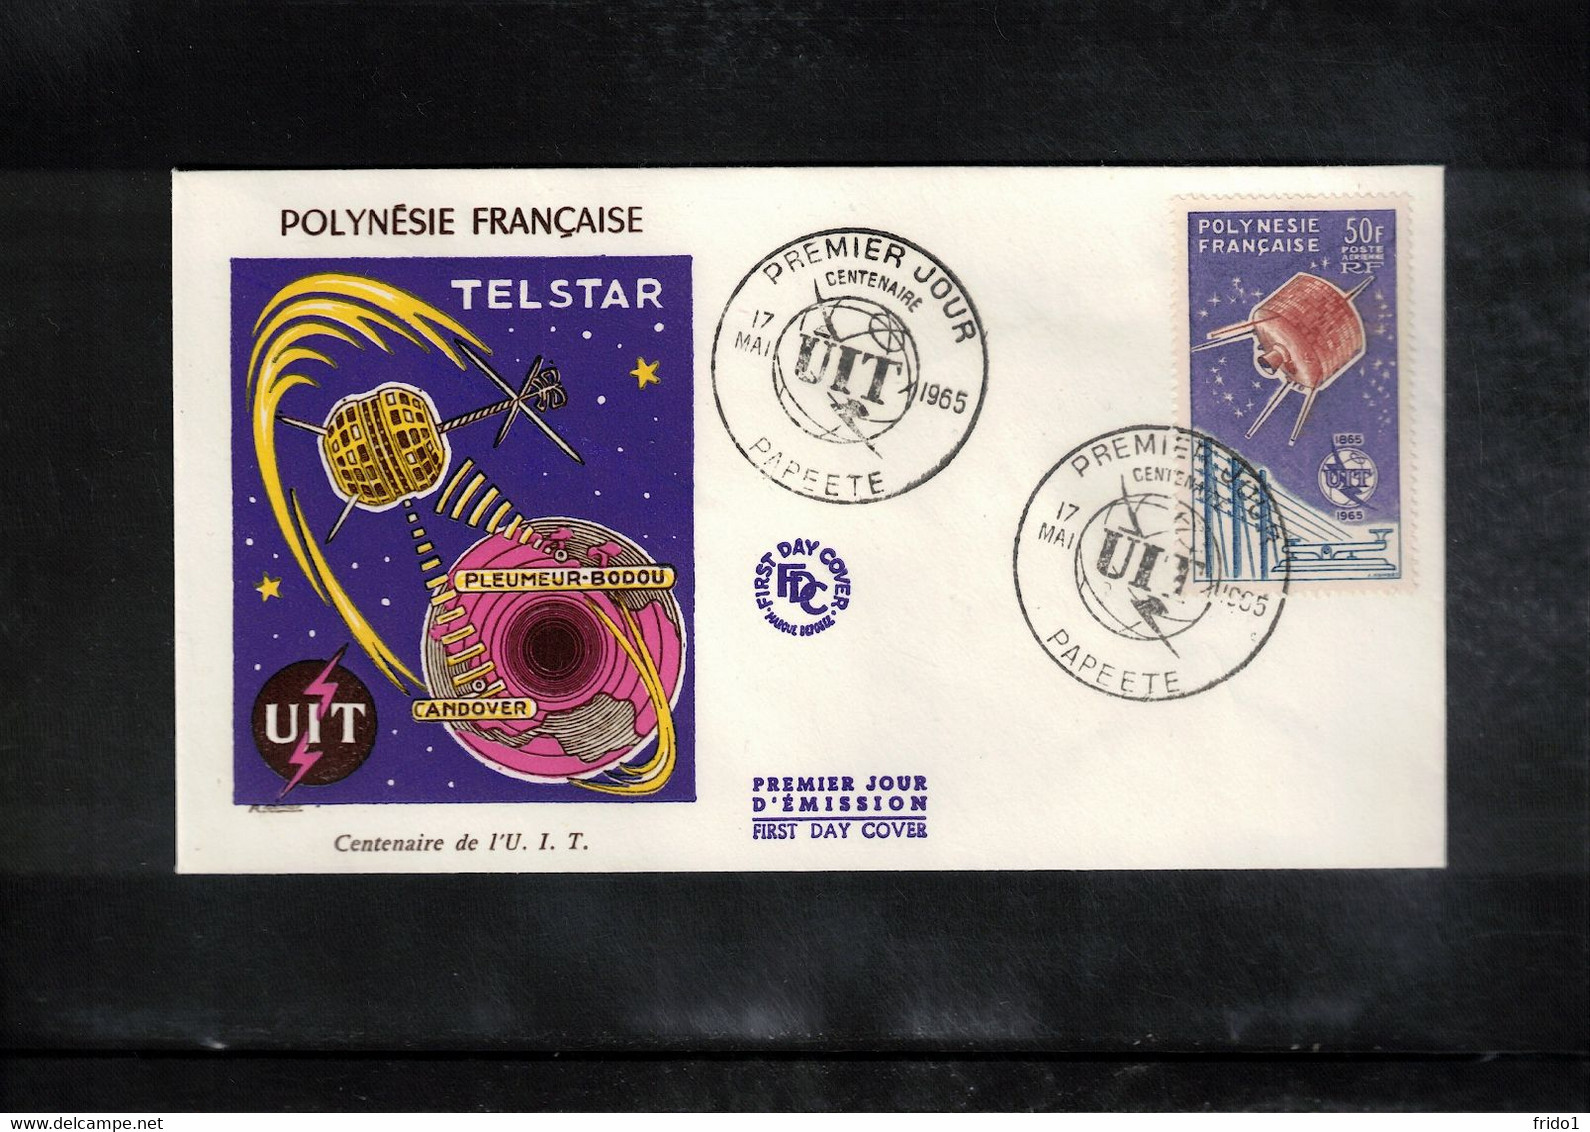 French Polynesia / Polynesie 1965 UIT / ITU - Space / Raumfahrt FDC - Océanie